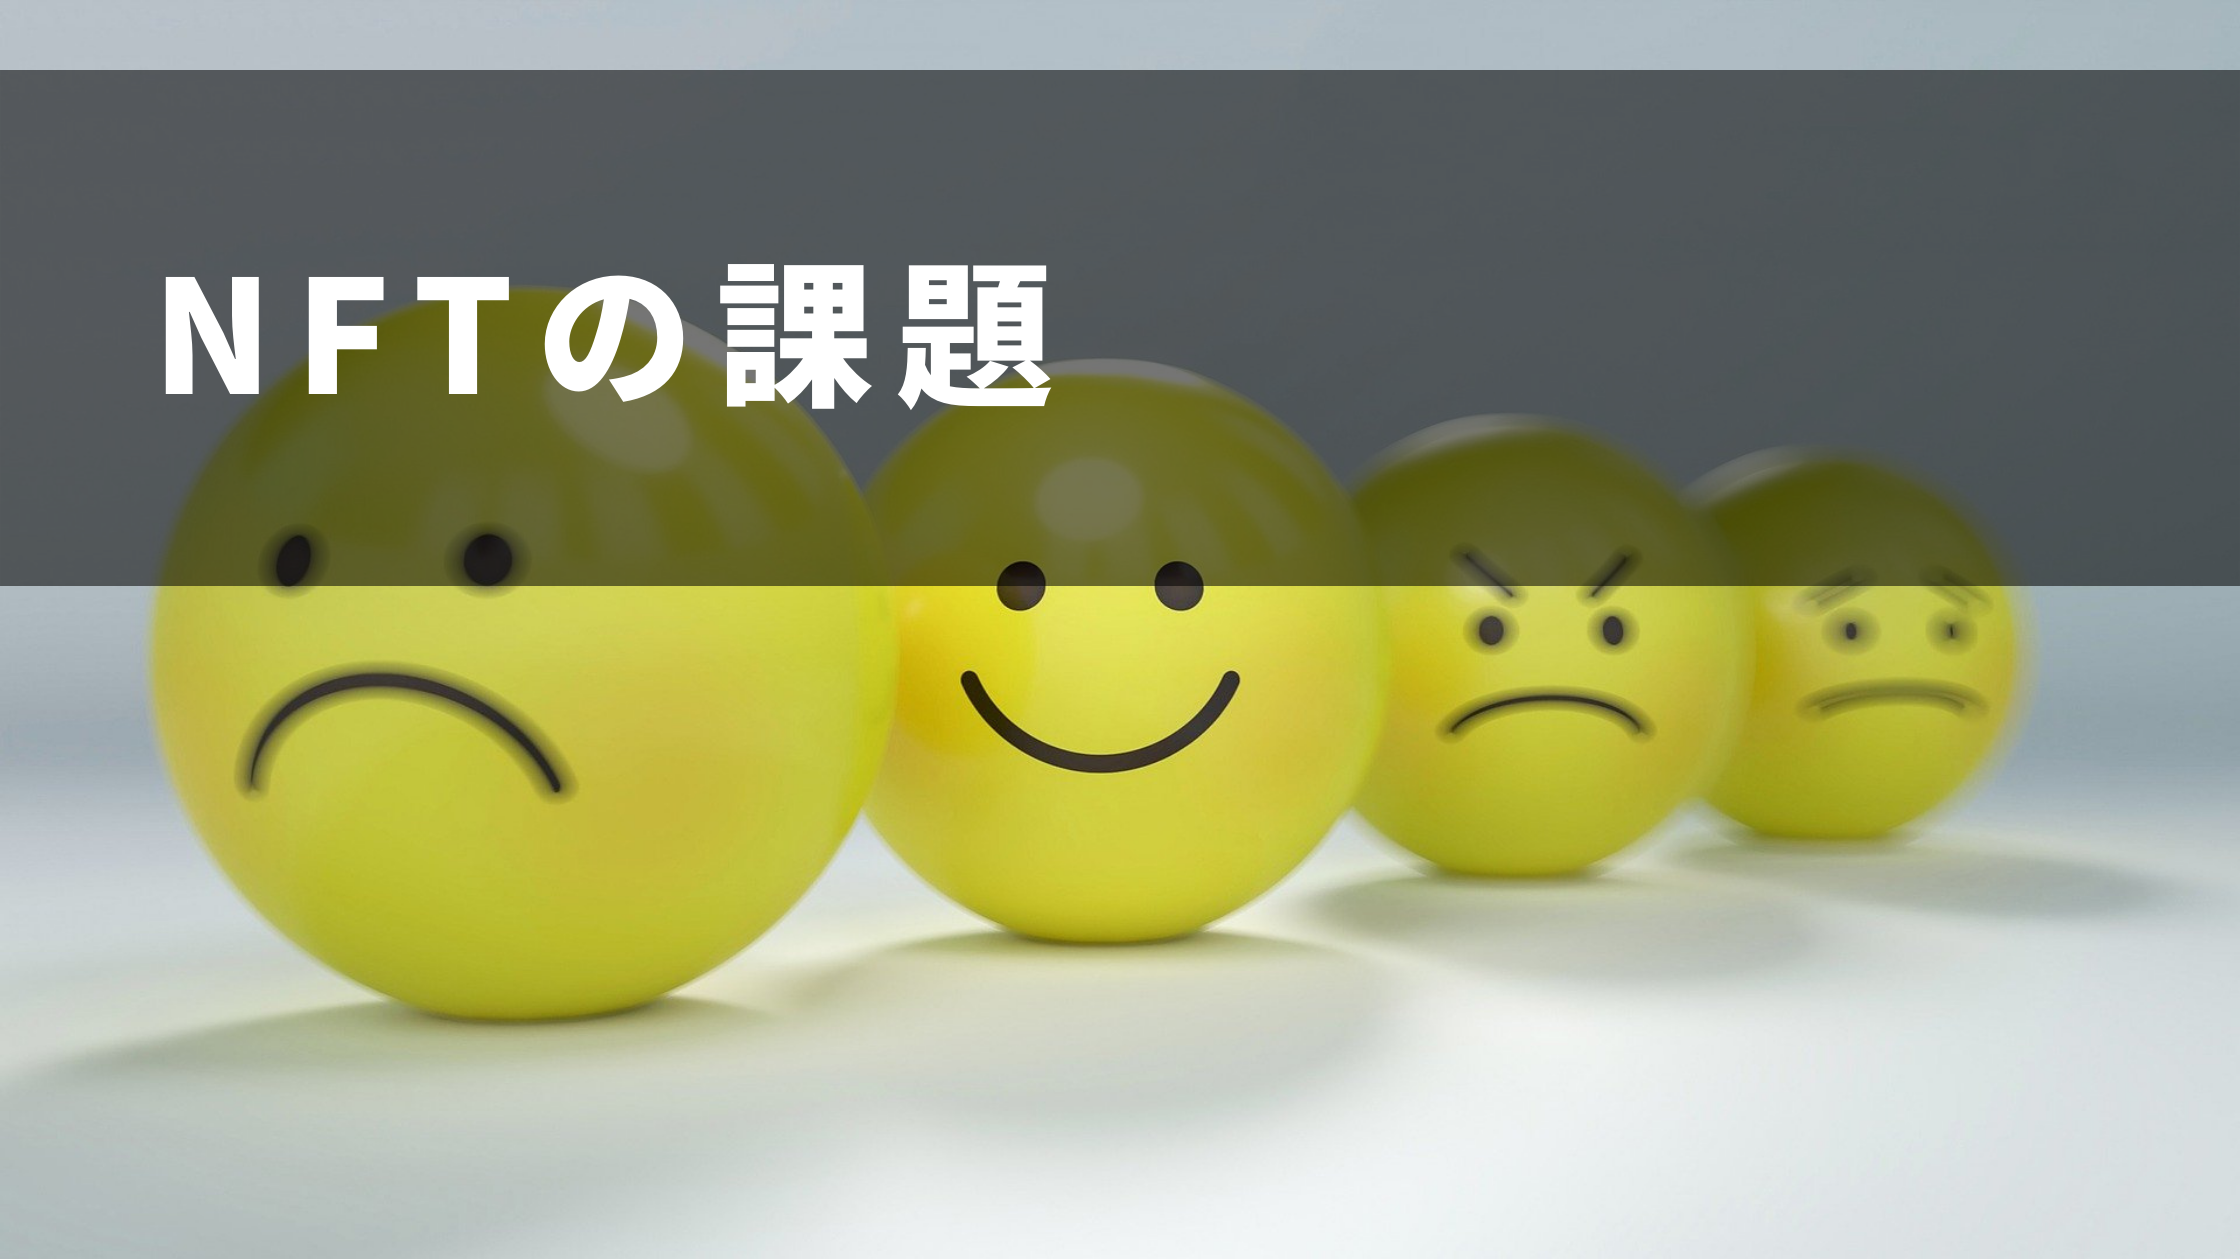 悲しそうな表情が描かれた黄色いボールの写真